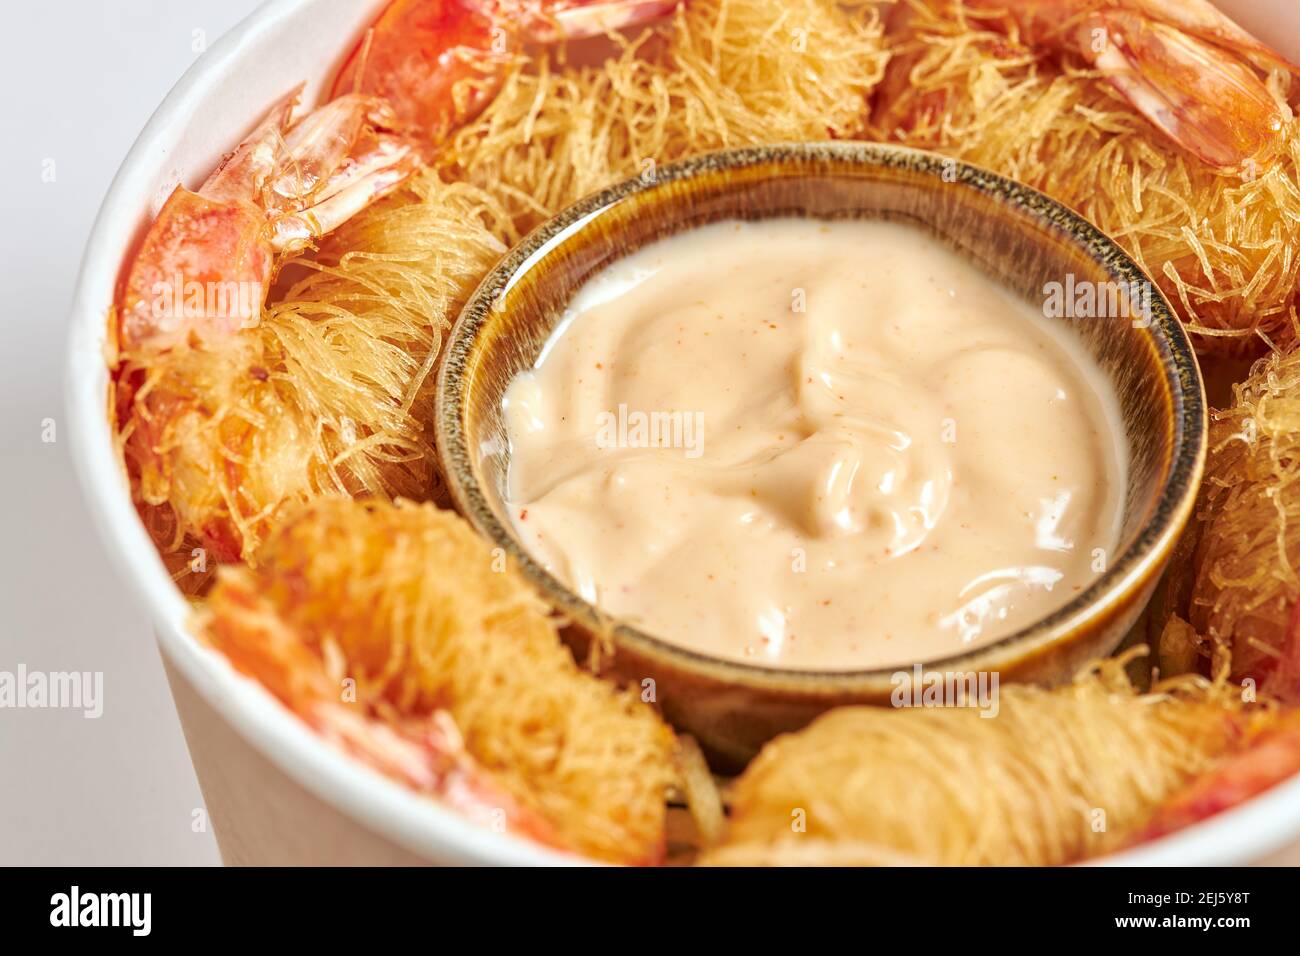 Gros plan d'un cube de crevettes frites enveloppées de pâtes Kataifi et servies avec une sauce dragon. Banque D'Images